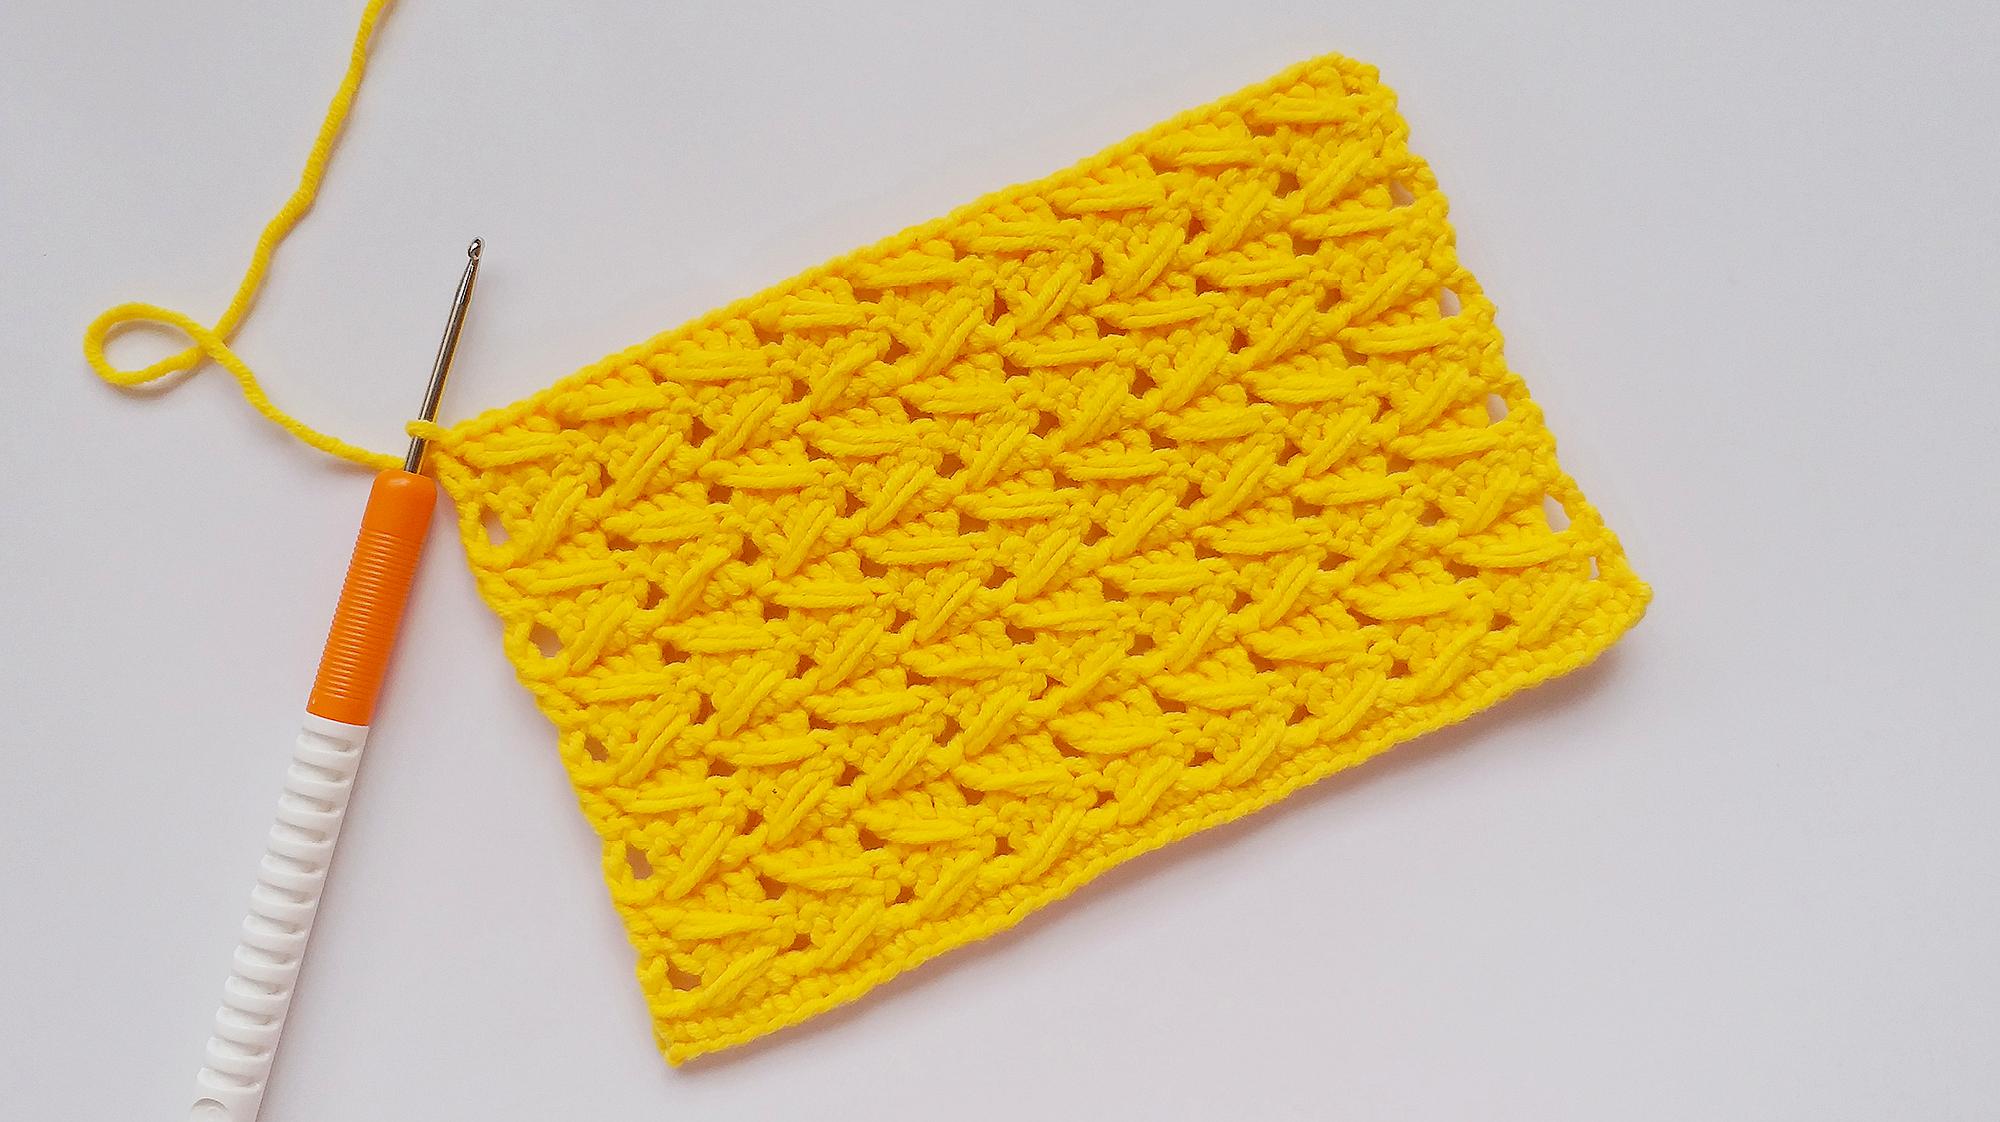 23  来源:好看视频-钩针编织 简单大方的镂空菱形花样 可以做围巾毛衣